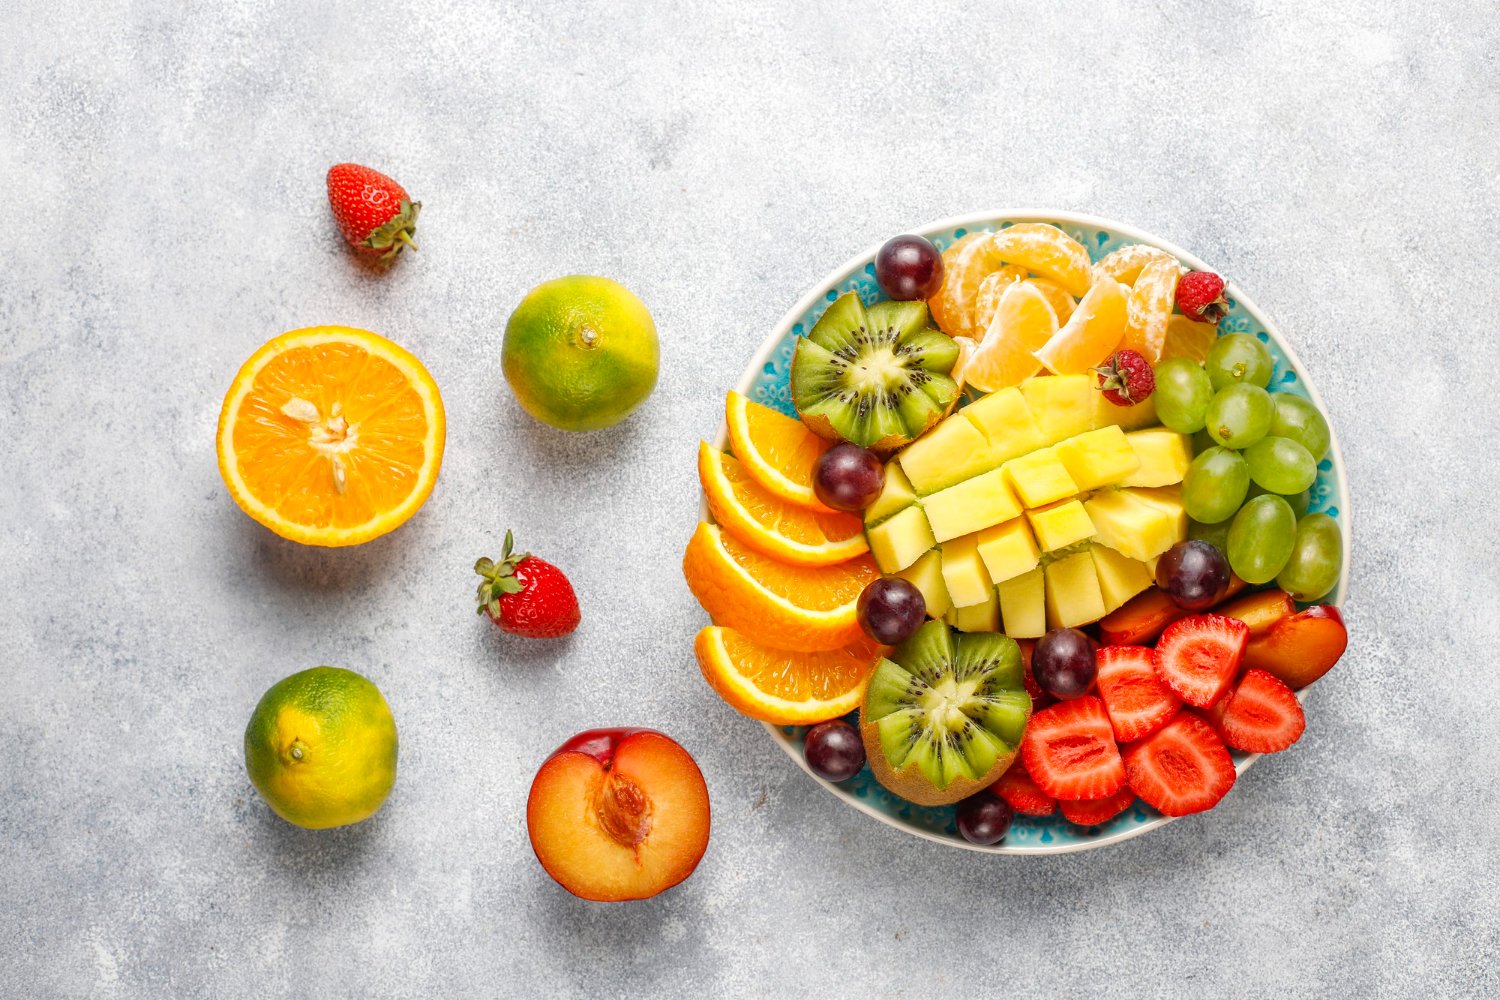 Comer duas porções de frutas por dia reduz o risco de diabetes em 36%